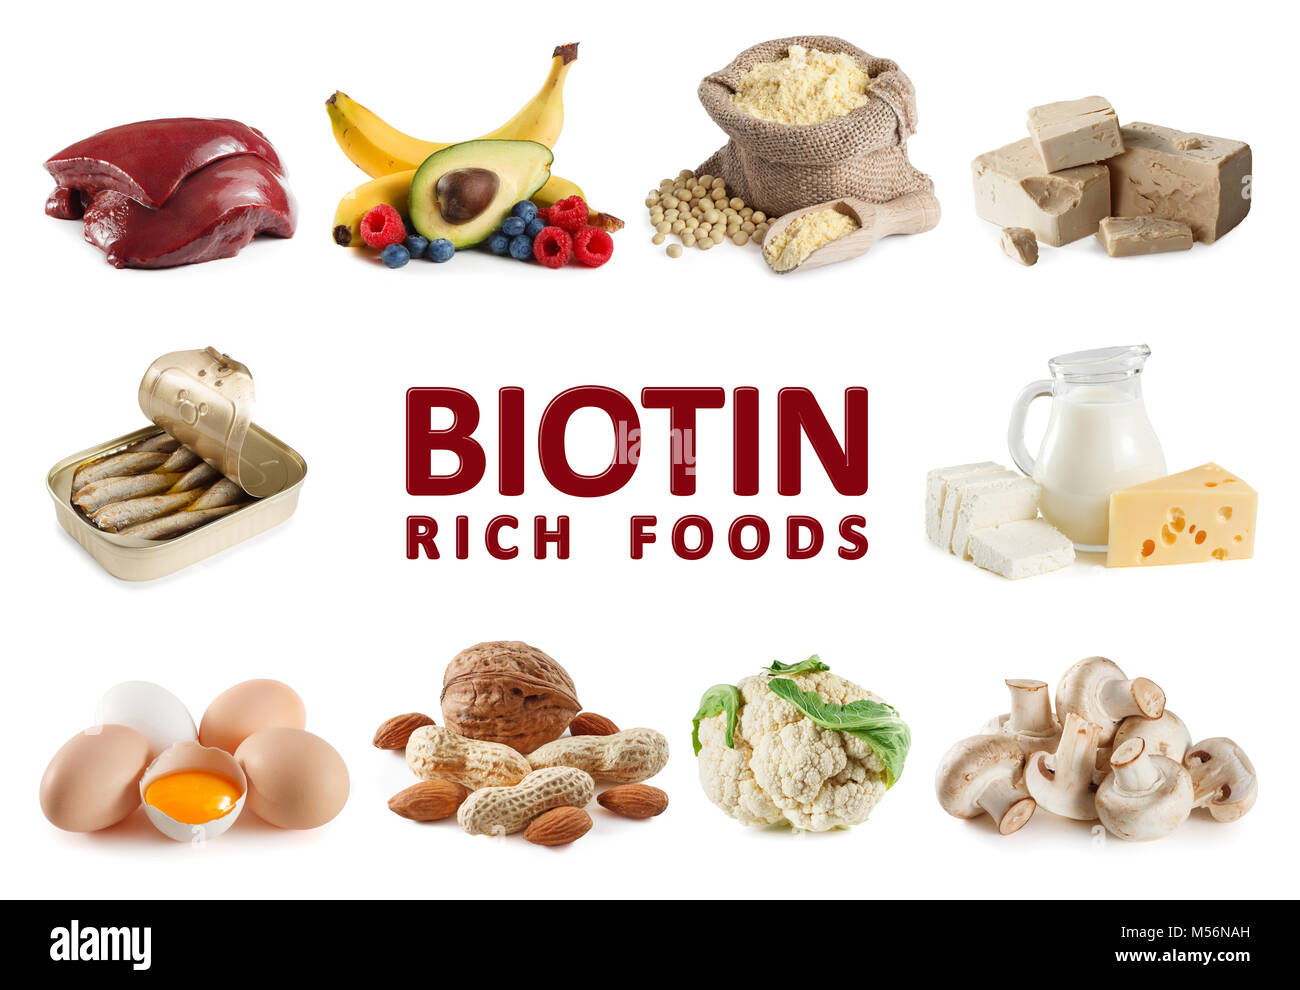 Lebensmittel, die reich an Biotin (Vitamin B7), Leber, Eigelb, Hefe, Sardinen, Sojamehl, Milch, Käse, Hüttenkäse, Banane, Avocado, Blaubeeren, raspber Stockfoto